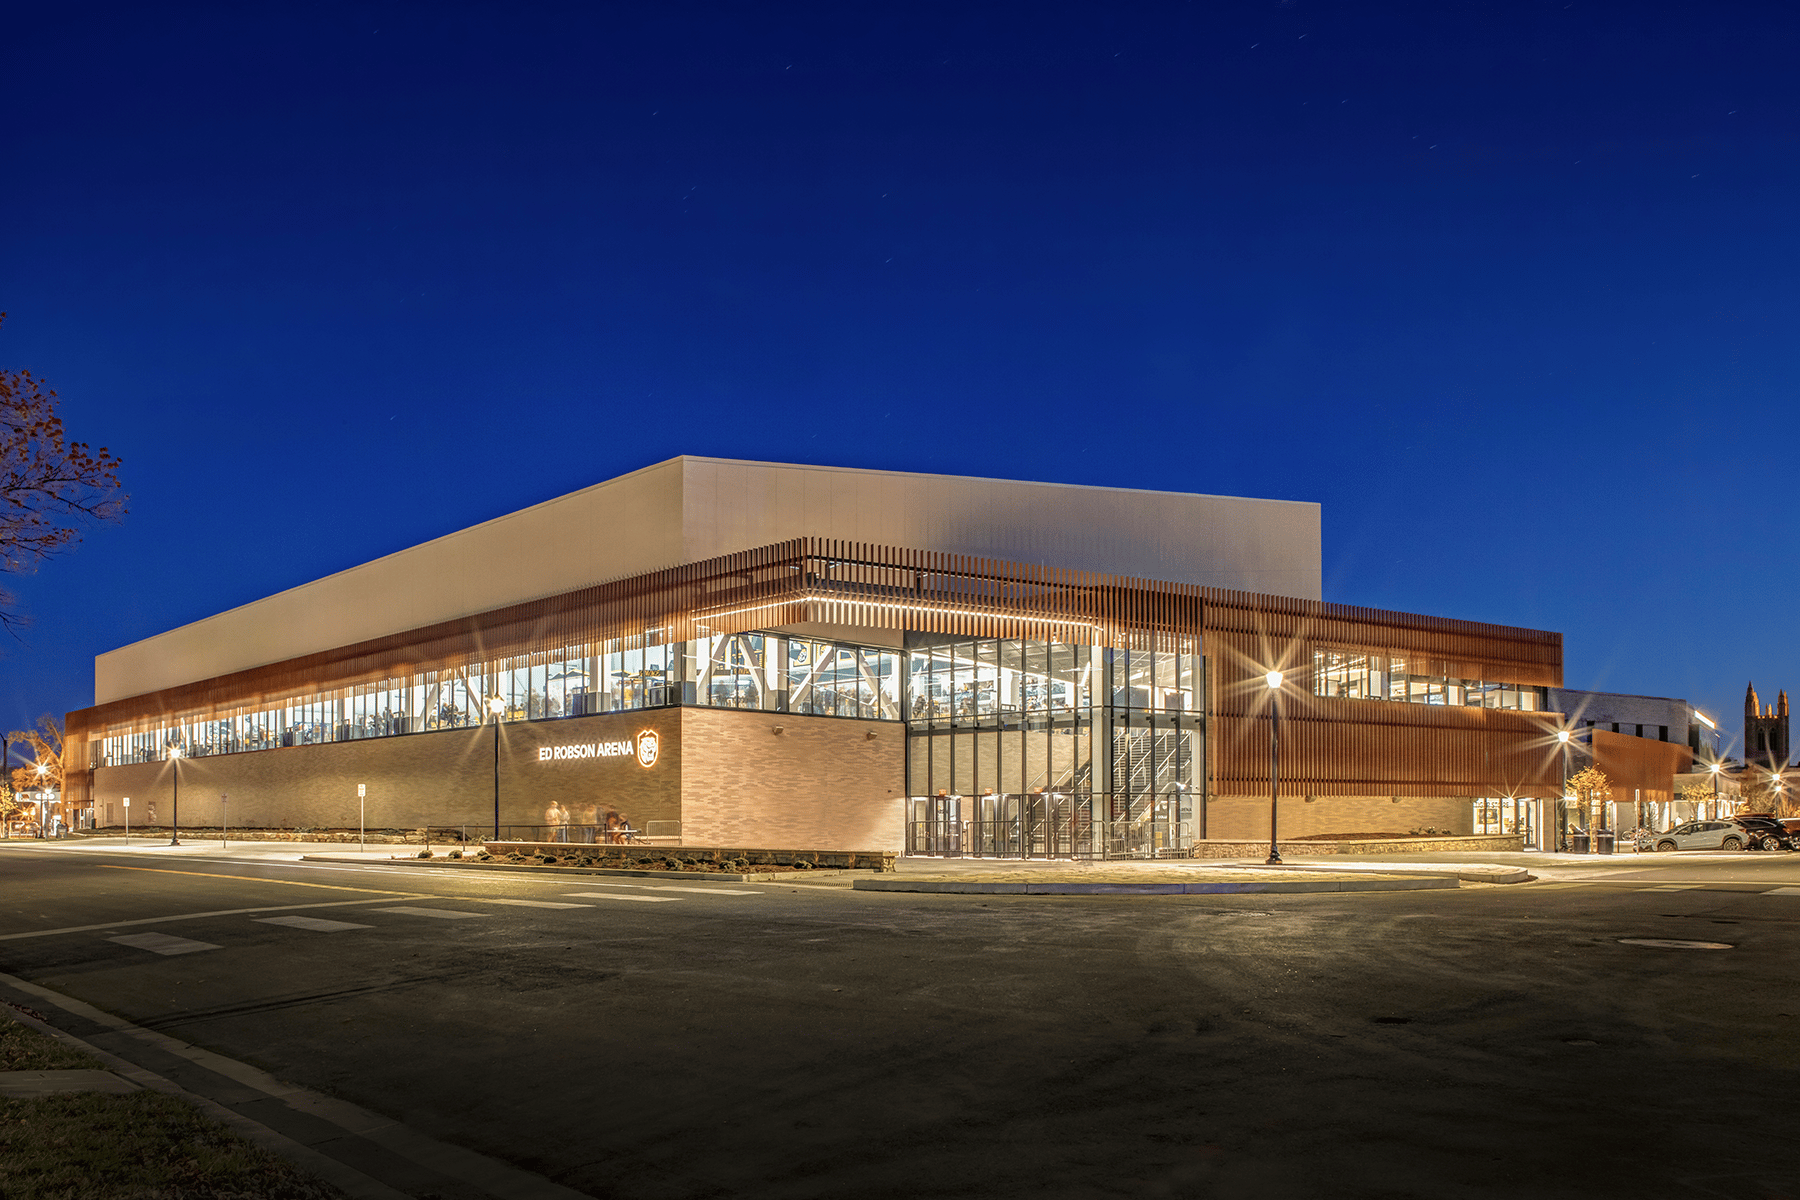 Colorado College Ed Robson Arena